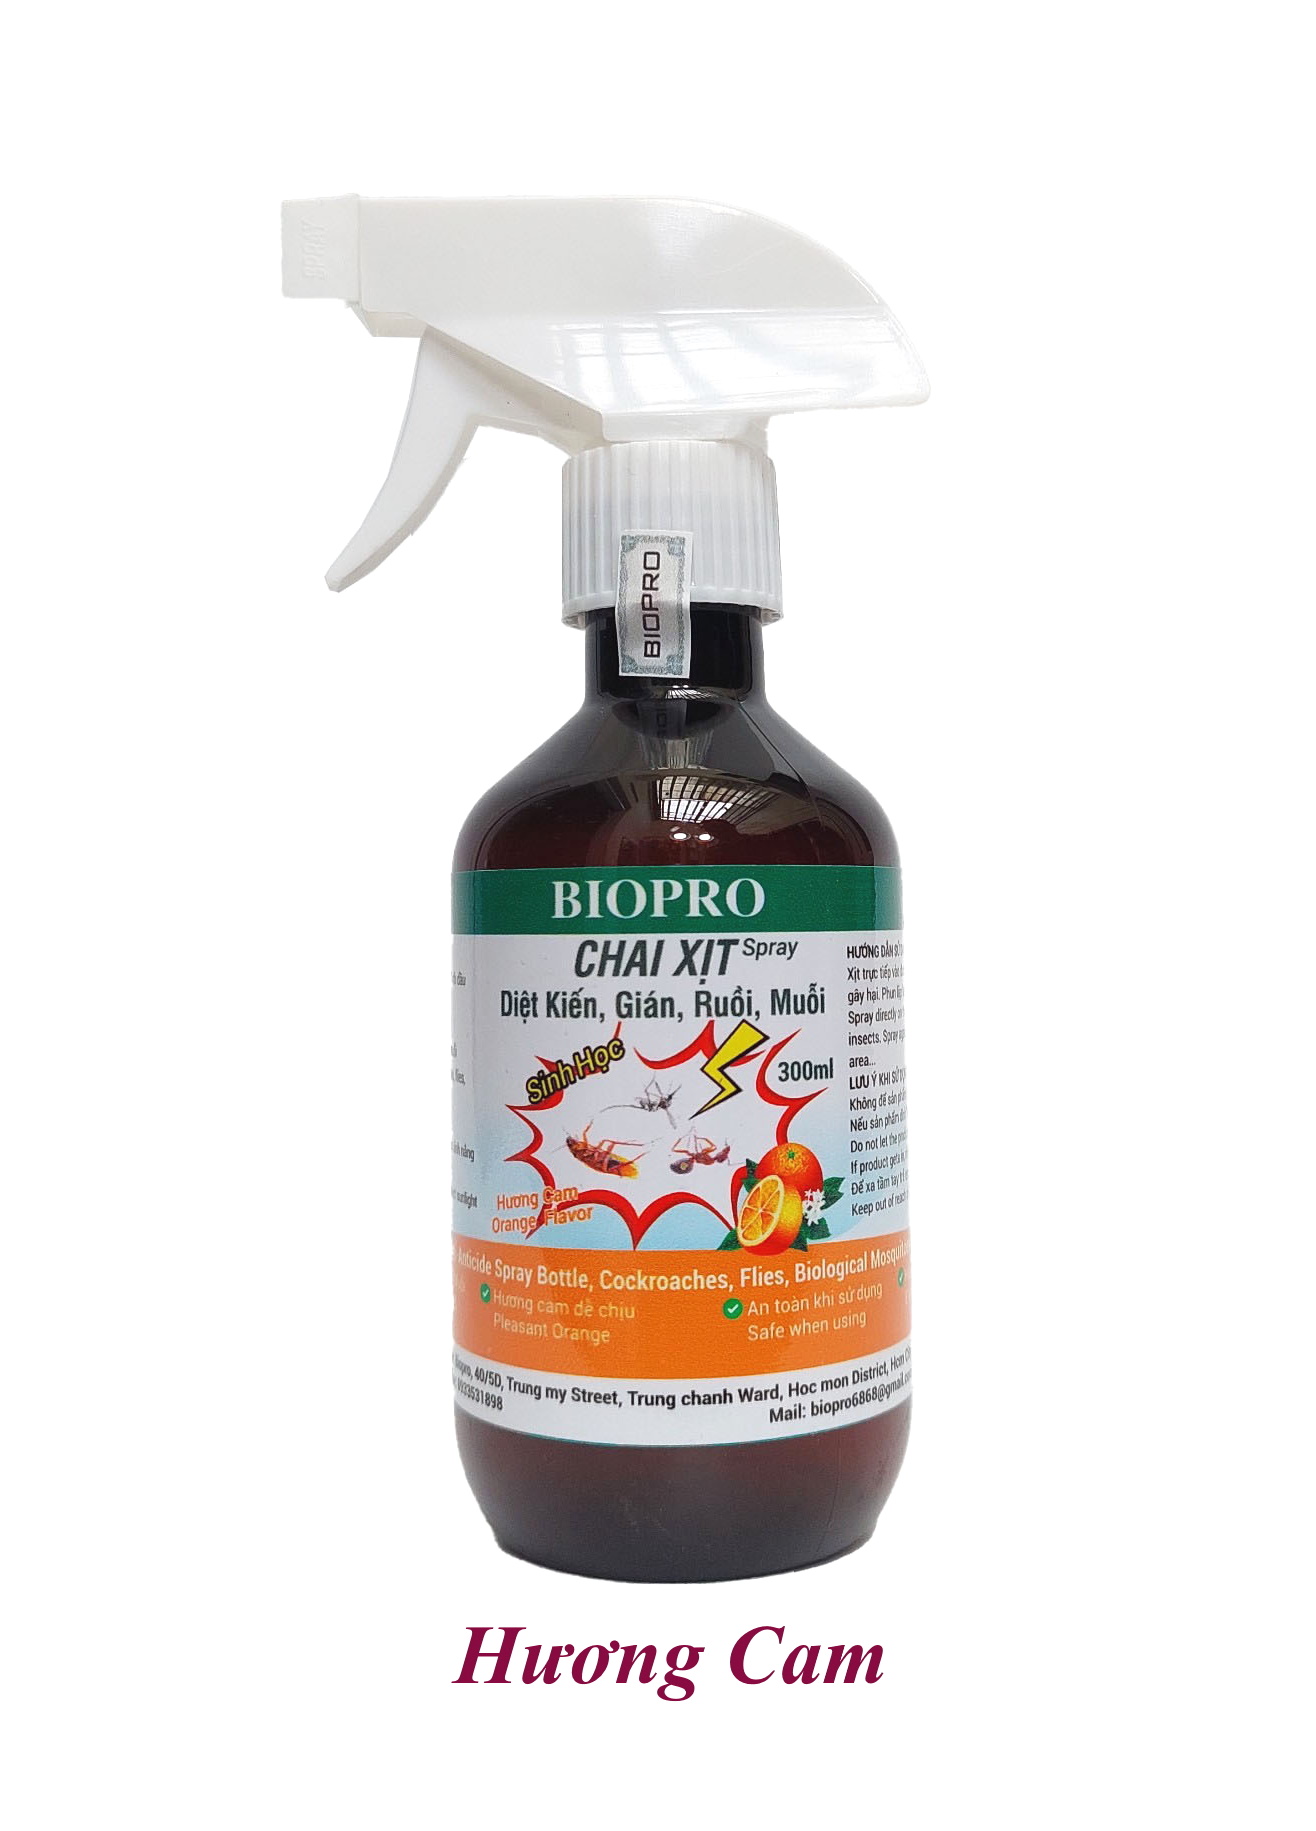 Chai dạng xịt 300ml. Thuốc Diệt kiến Diệt gián Diệt ruồi Diệt muỗi Sinh học Biopro an toàn hiệu quả Nhiều hương lựa chọn